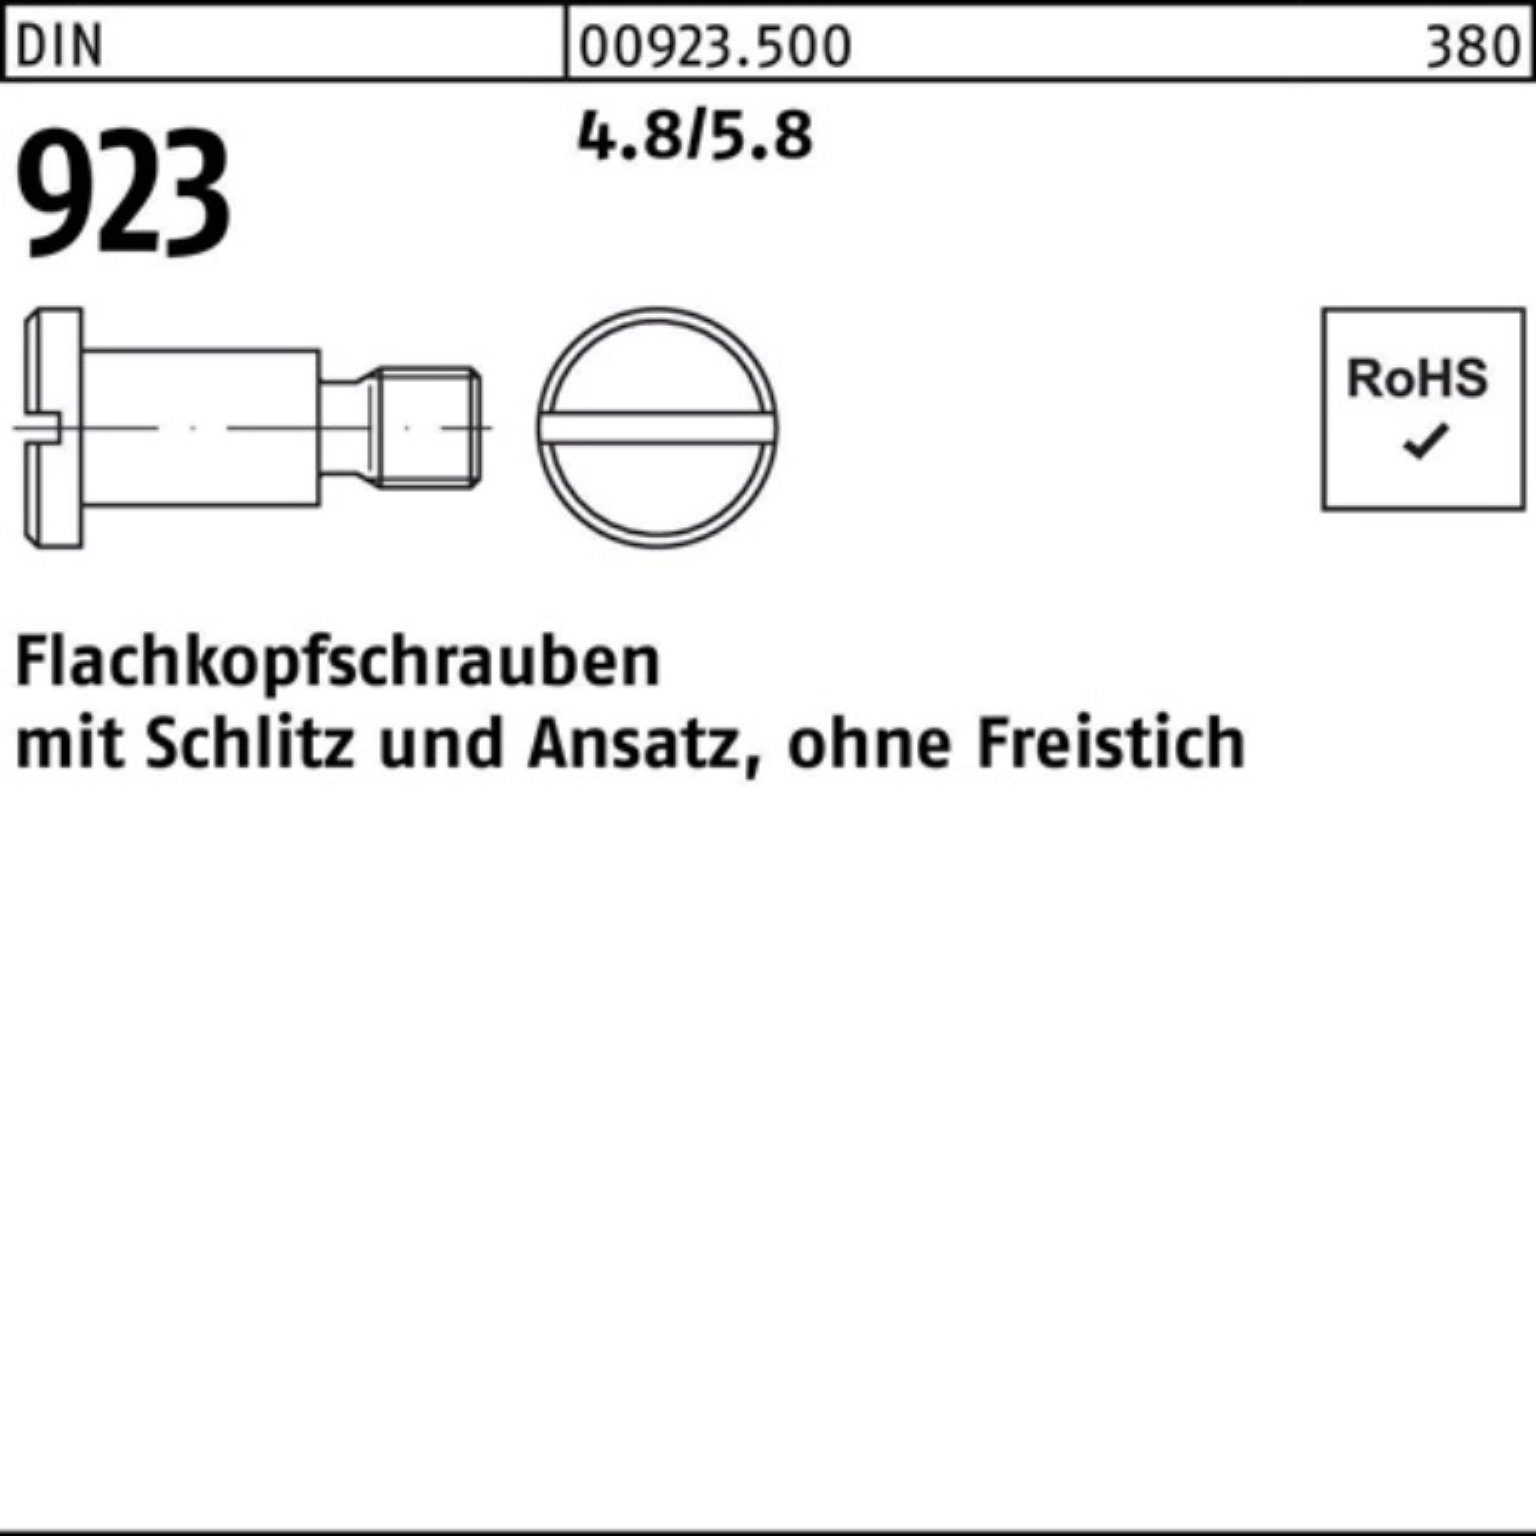 Reyher Flachkopfschraube 7,0 M5x 6x Schlitz/Ansatz DIN Pack 100er 4.8/5.8 923 Schraube